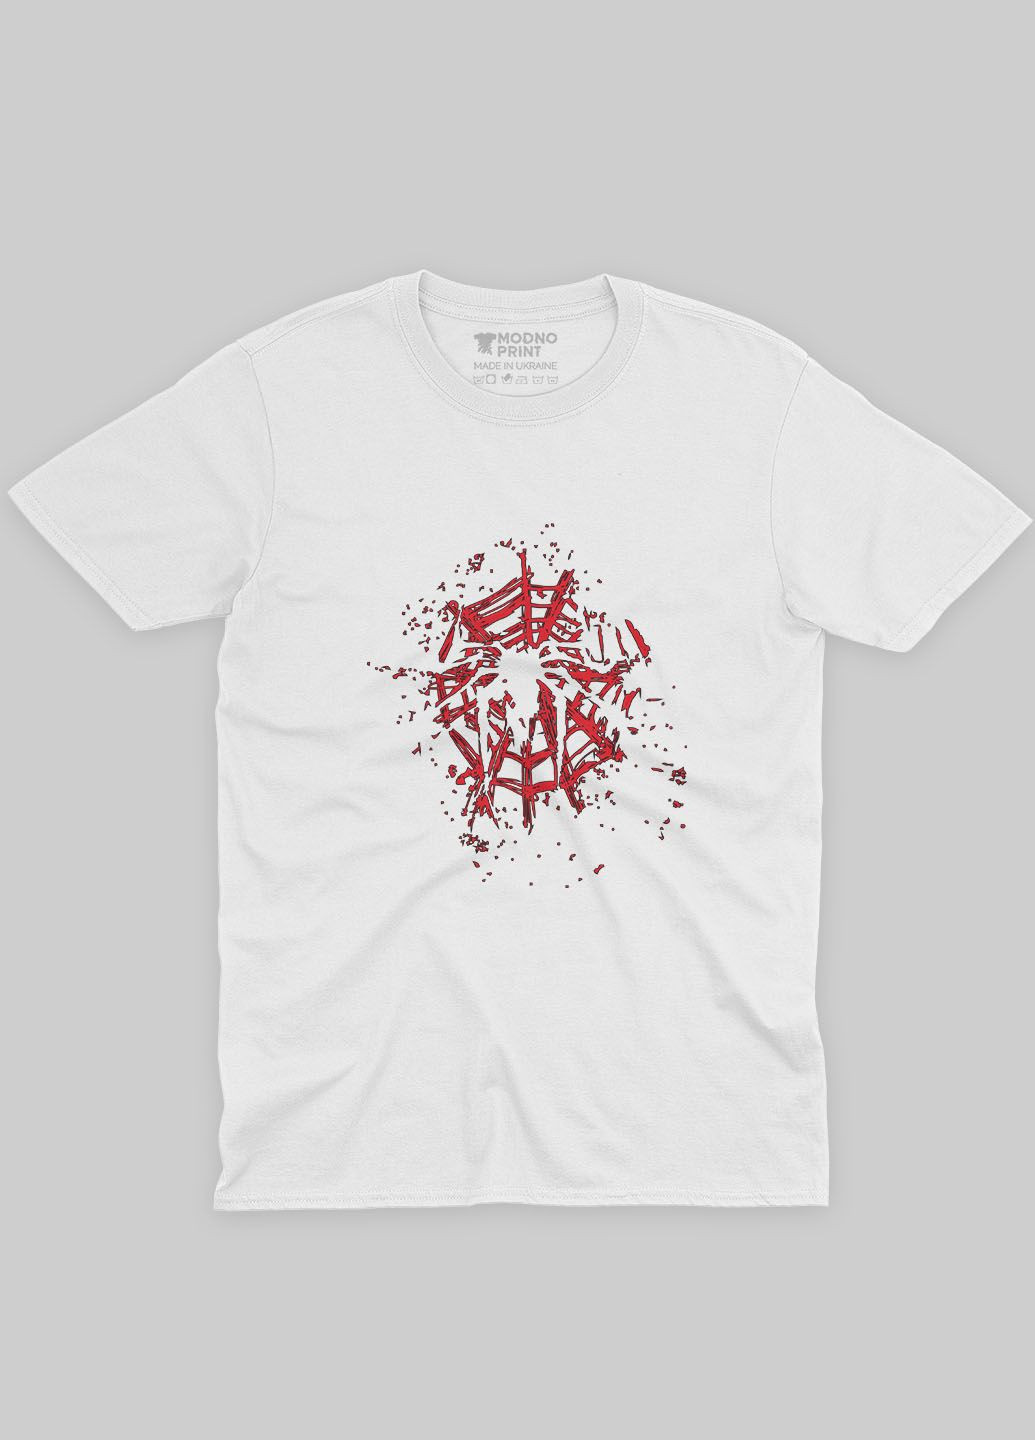 Белая демисезонная футболка для мальчика с принтом супергероя - человек-паук (ts001-1-whi-006-014-003-b) Modno